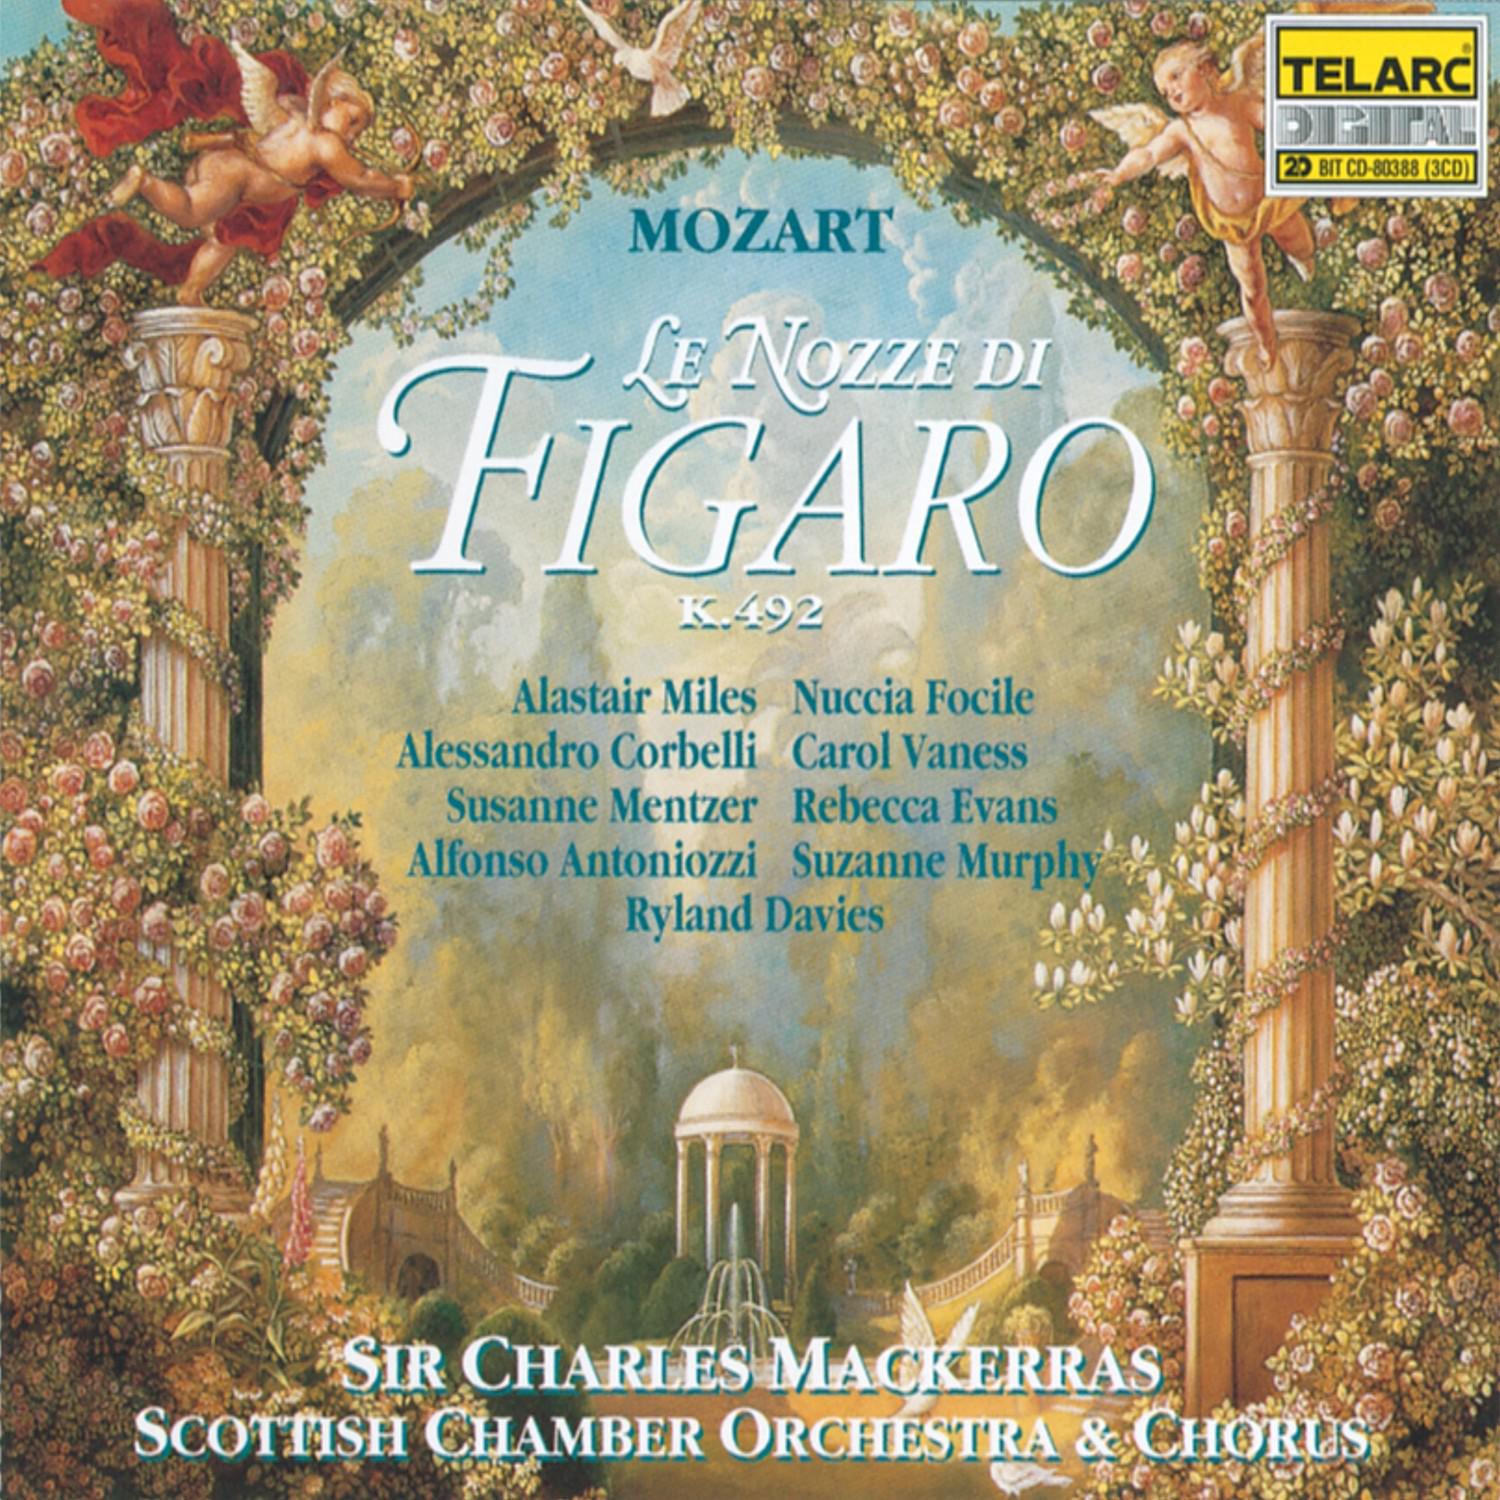 Marriage of Figaro: N. 5: Duettino: "Via, resti servita, madama brillante"